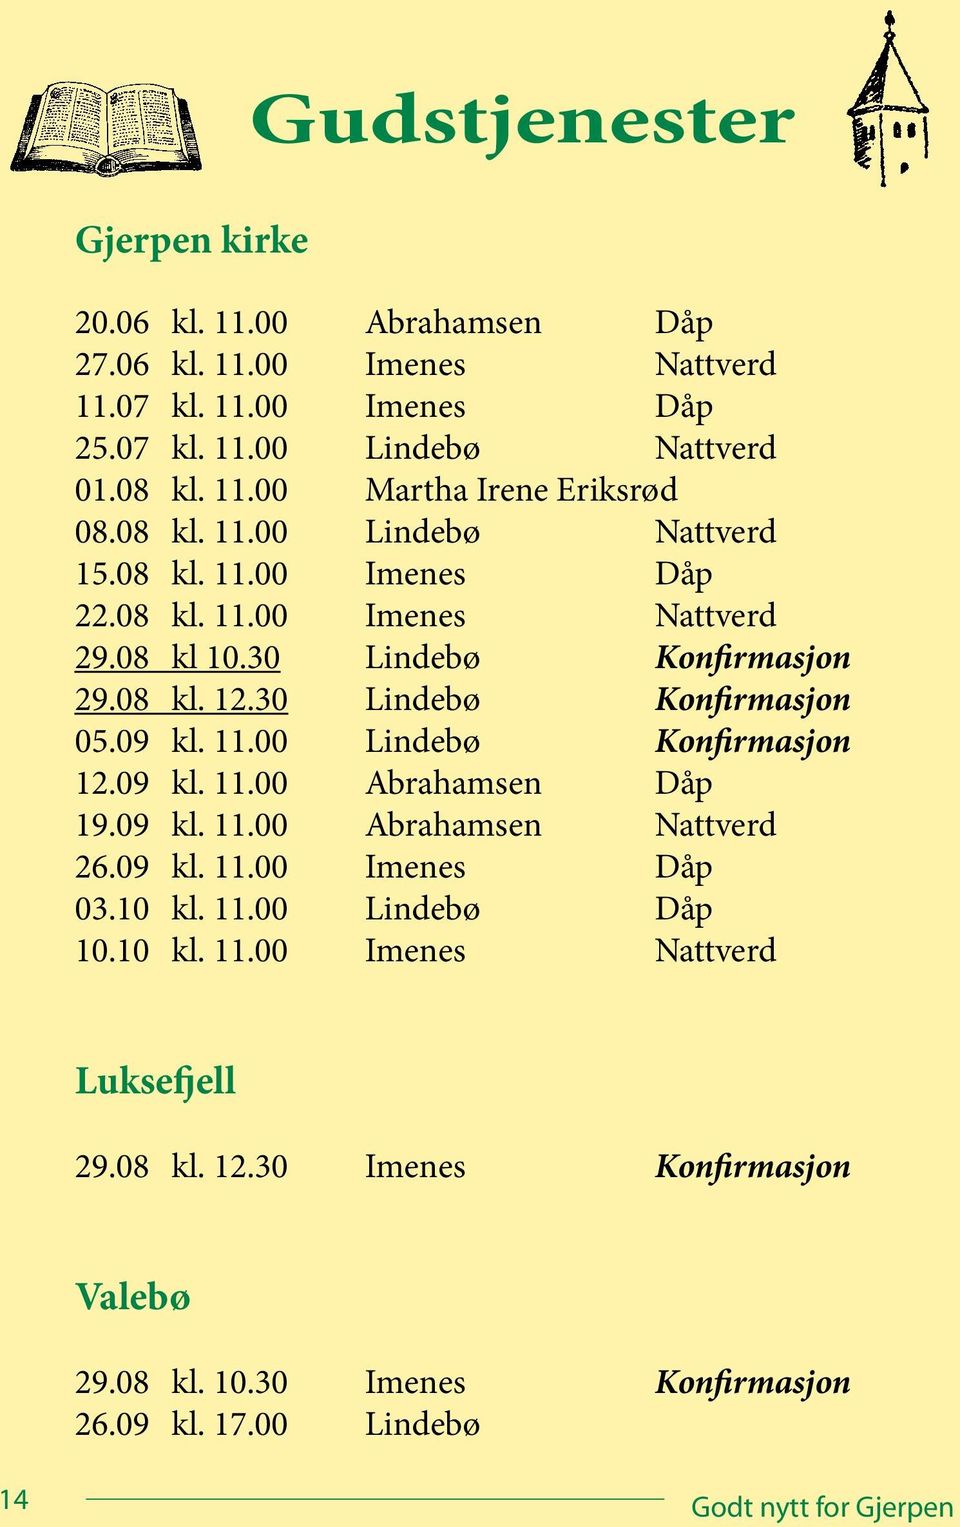 11.00 Lindebø Konfirmasjon 12.09 kl. 11.00 Abrahamsen Dåp 19.09 kl. 11.00 Abrahamsen Nattverd 26.09 kl. 11.00 Imenes Dåp 03.10 kl. 11.00 Lindebø Dåp 10.10 kl. 11.00 Imenes Nattverd Luksefjell 29.